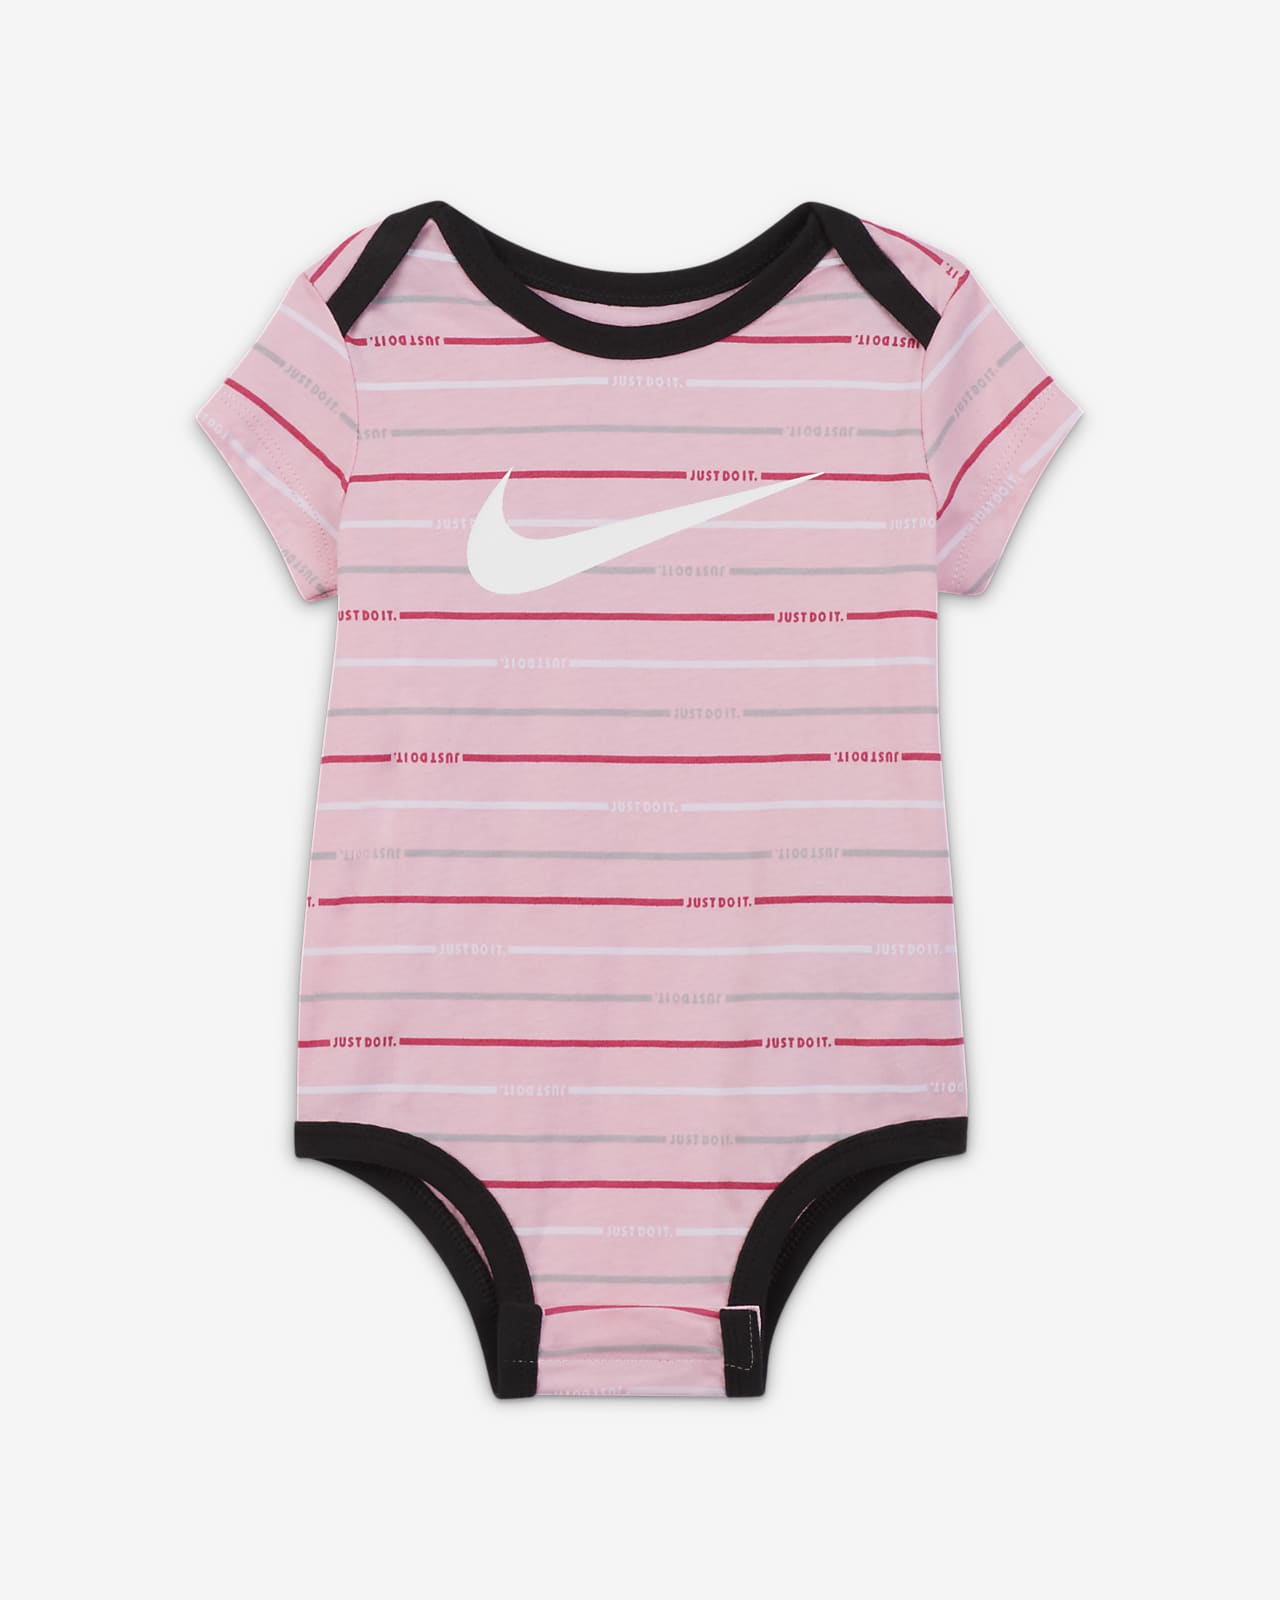 Nike Baby 3-Piece Set.